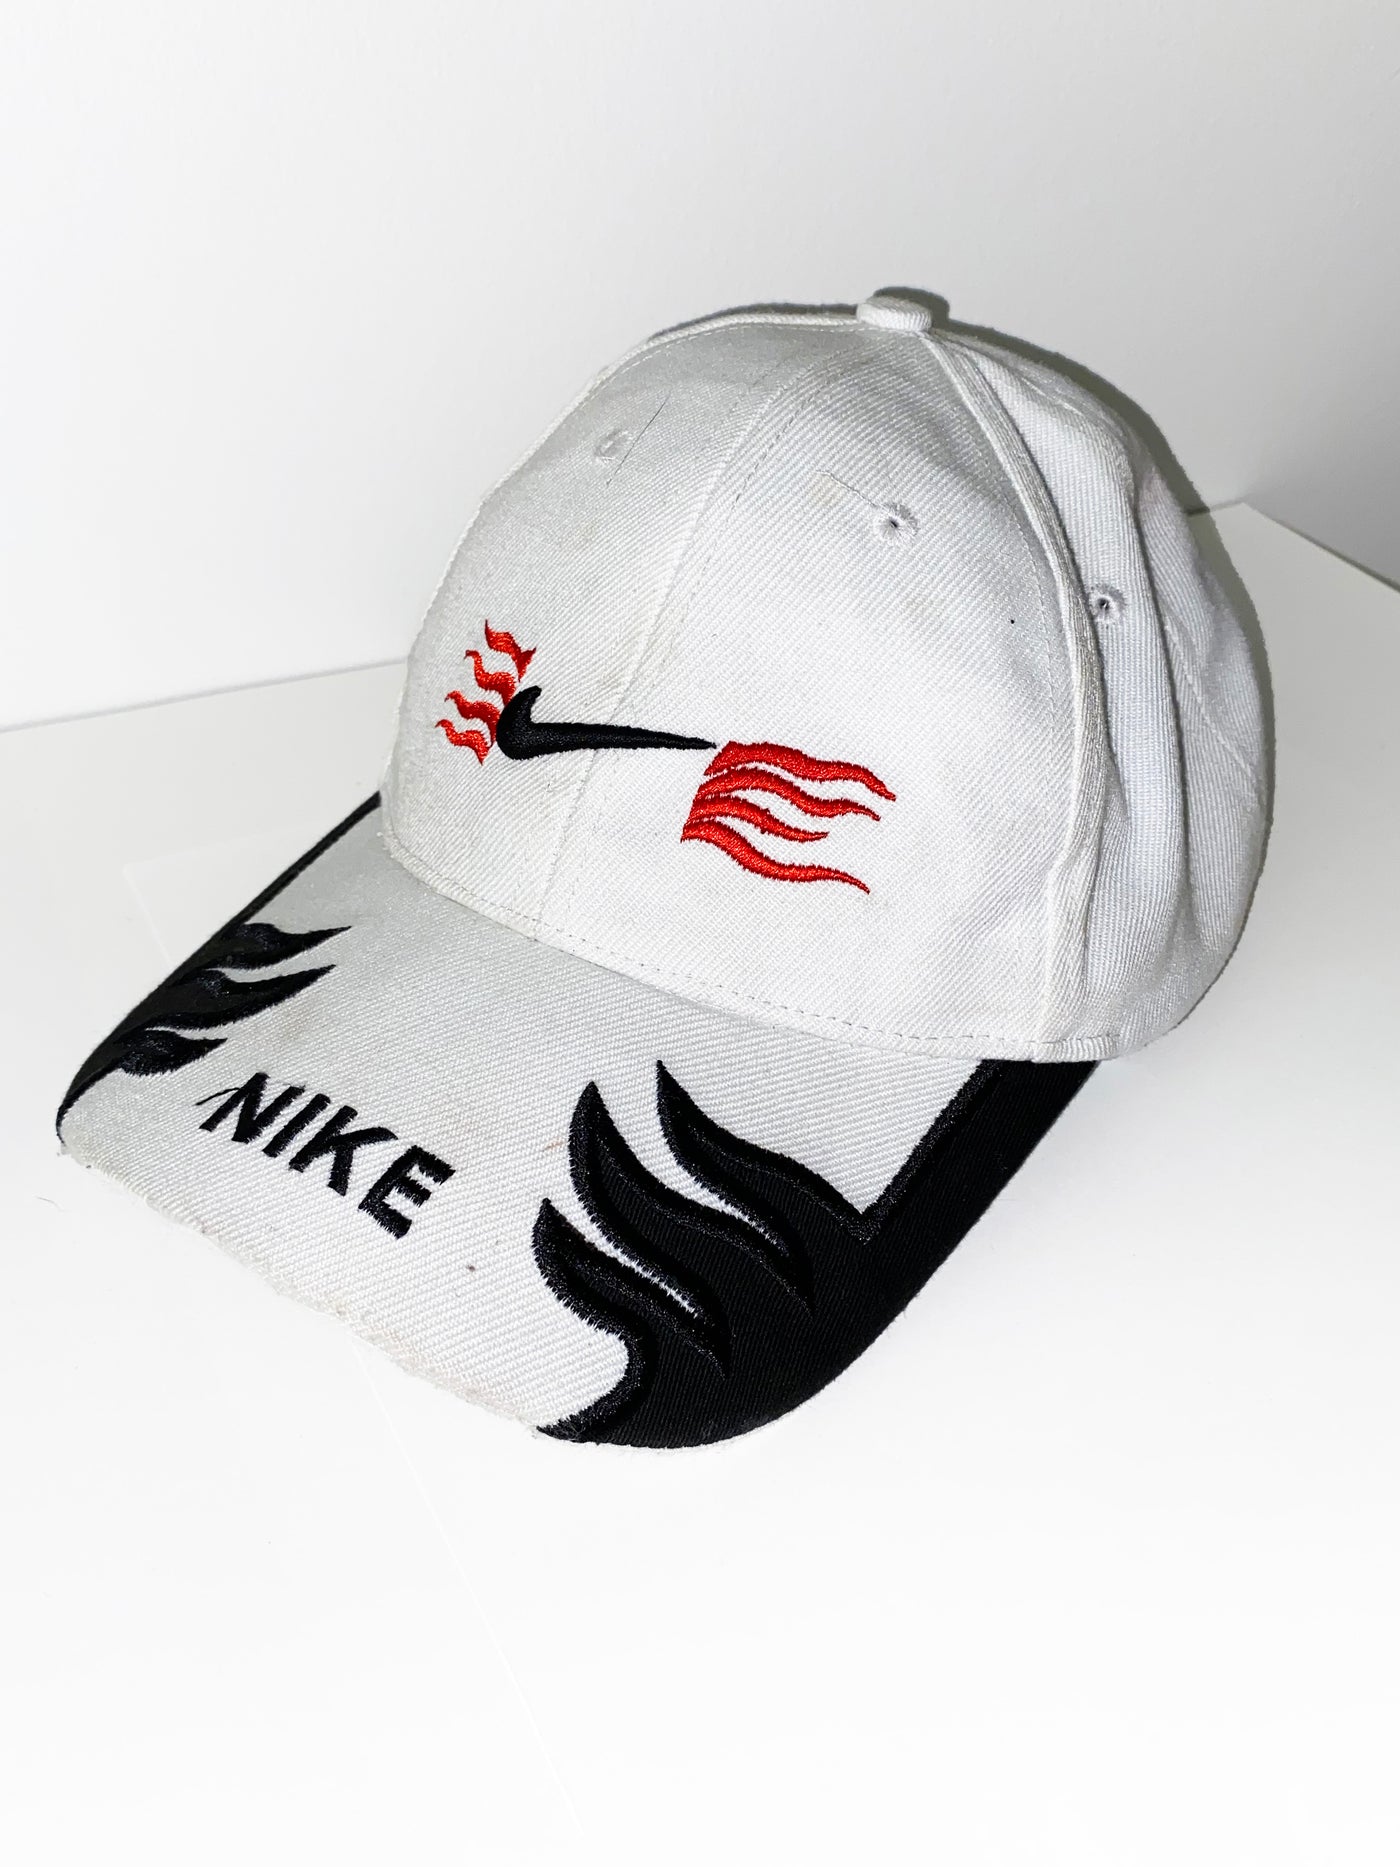 Vintage Bootleg Nike Hat